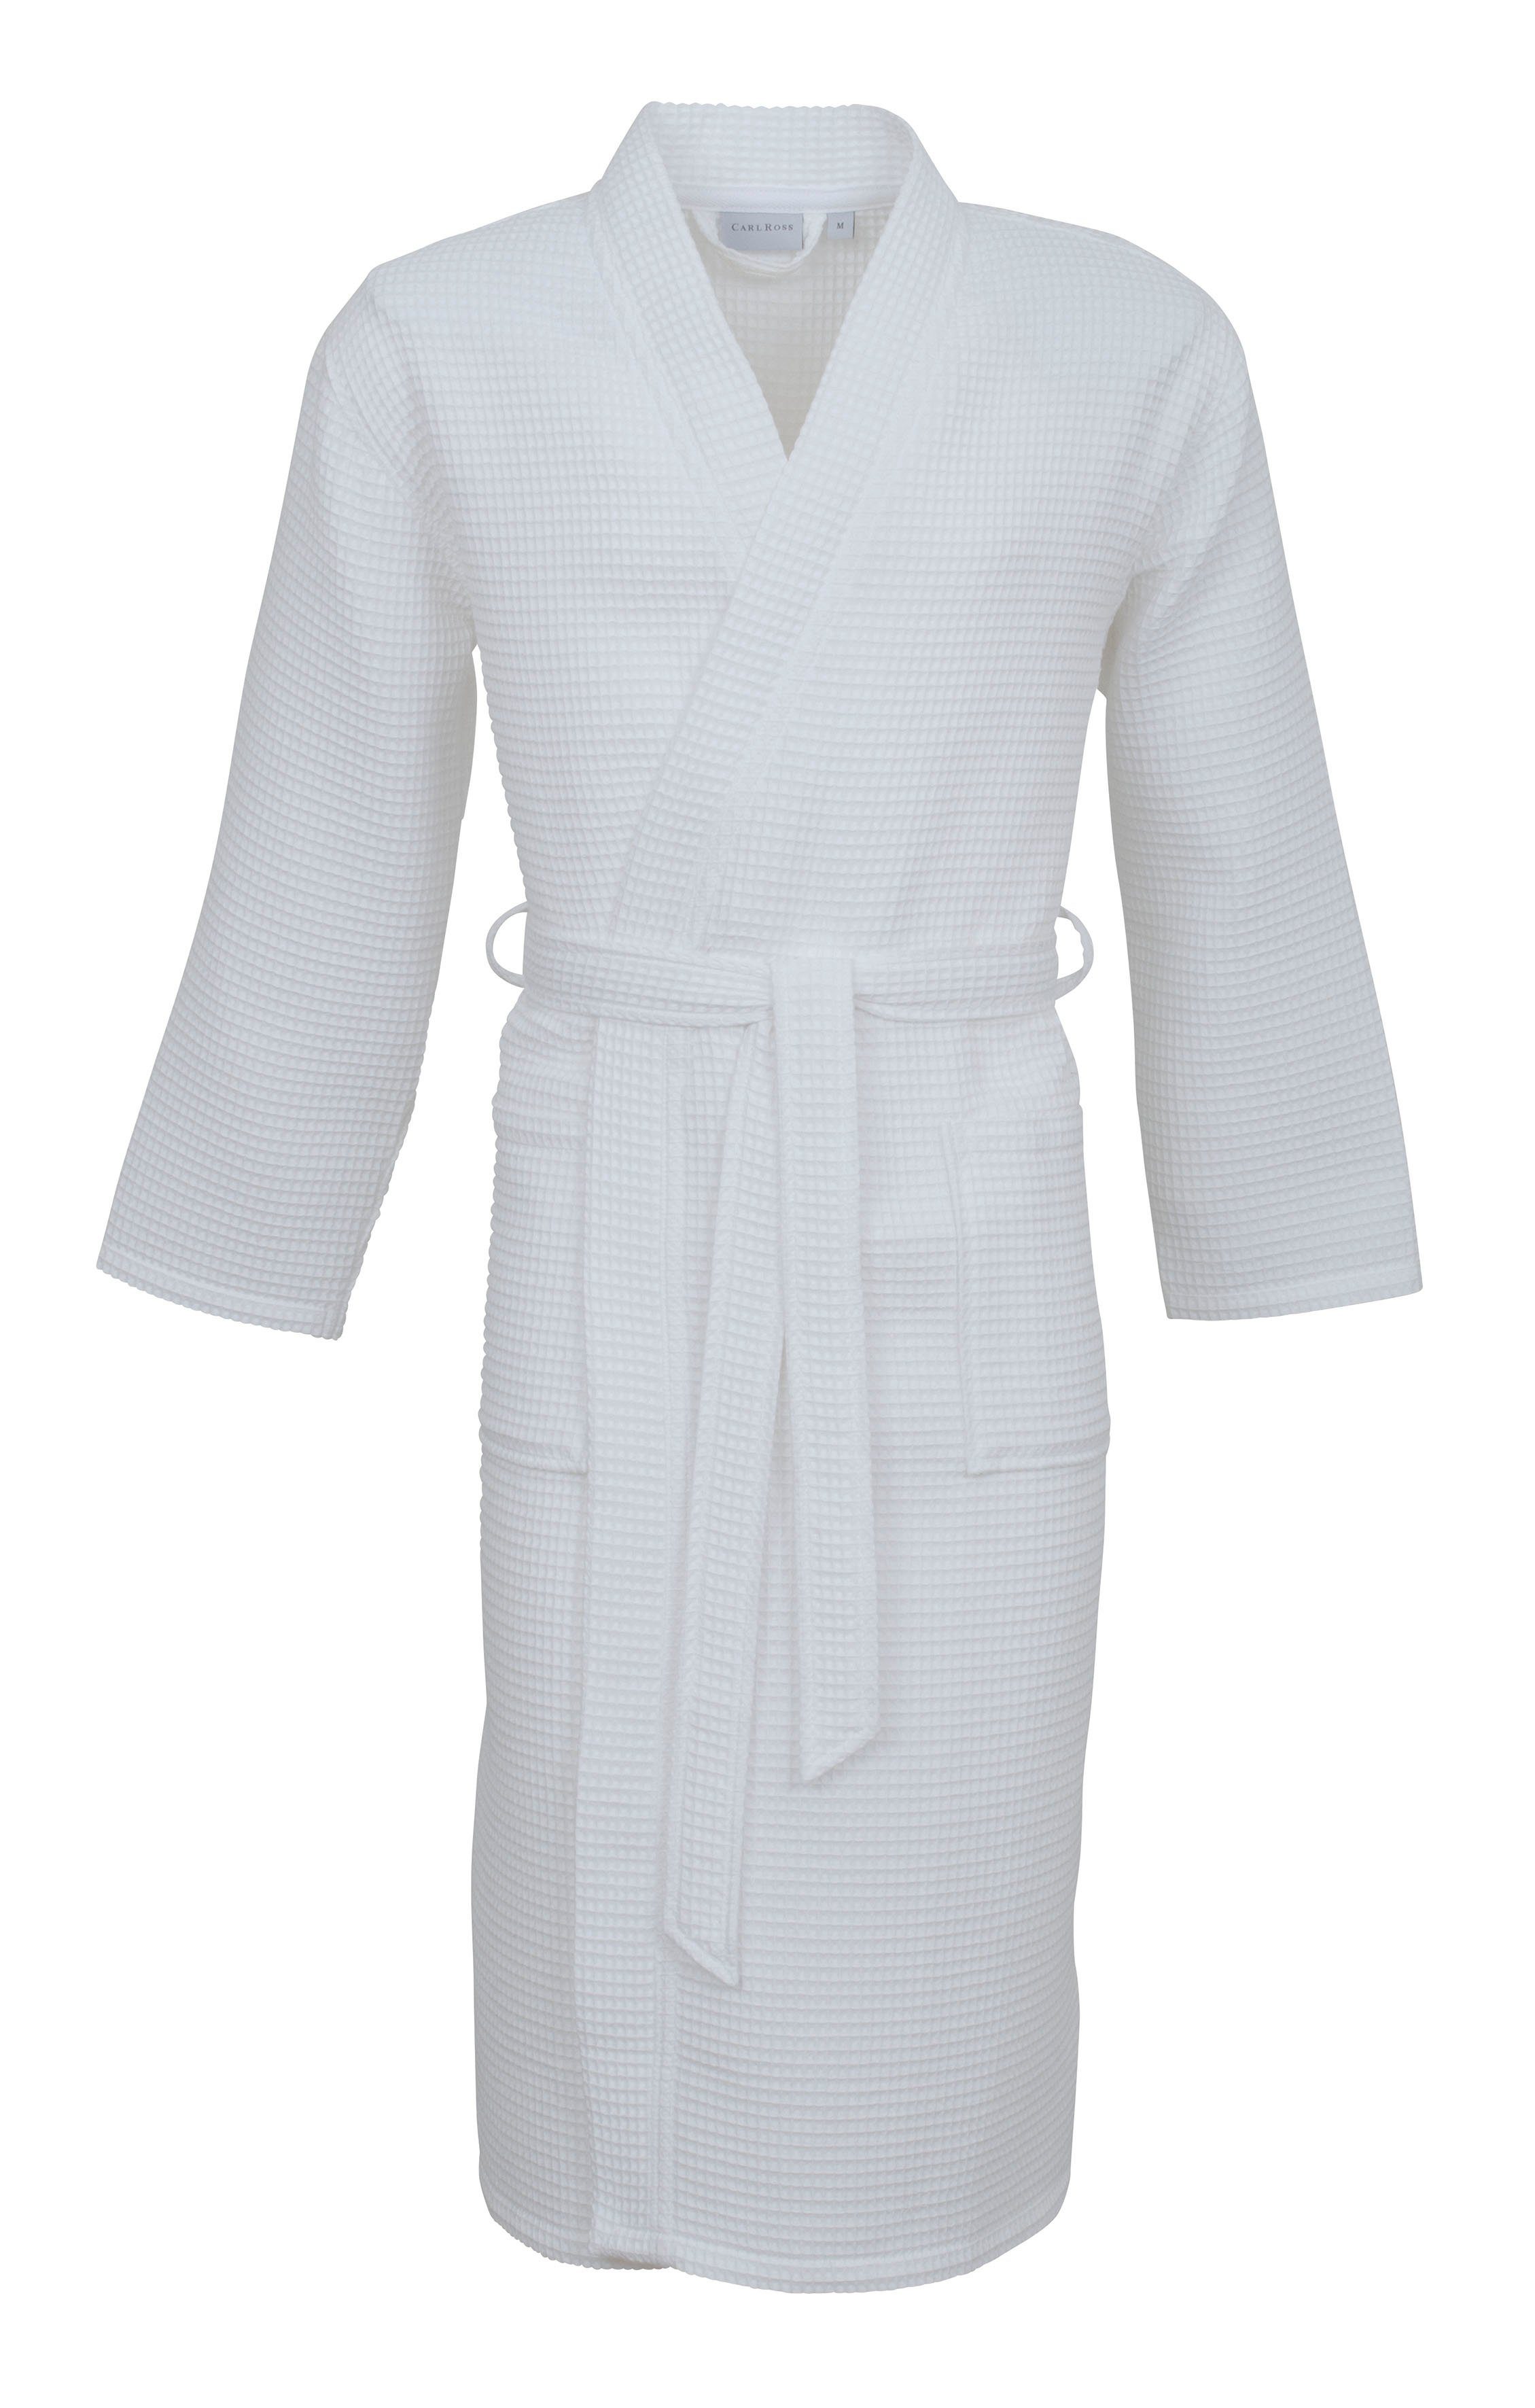 Beliebte Neuware Carl Ross Unisex-Bademantel Baumwolle, Gürtel, white 25100, Waffelpique Langform, Kimono-Kragen